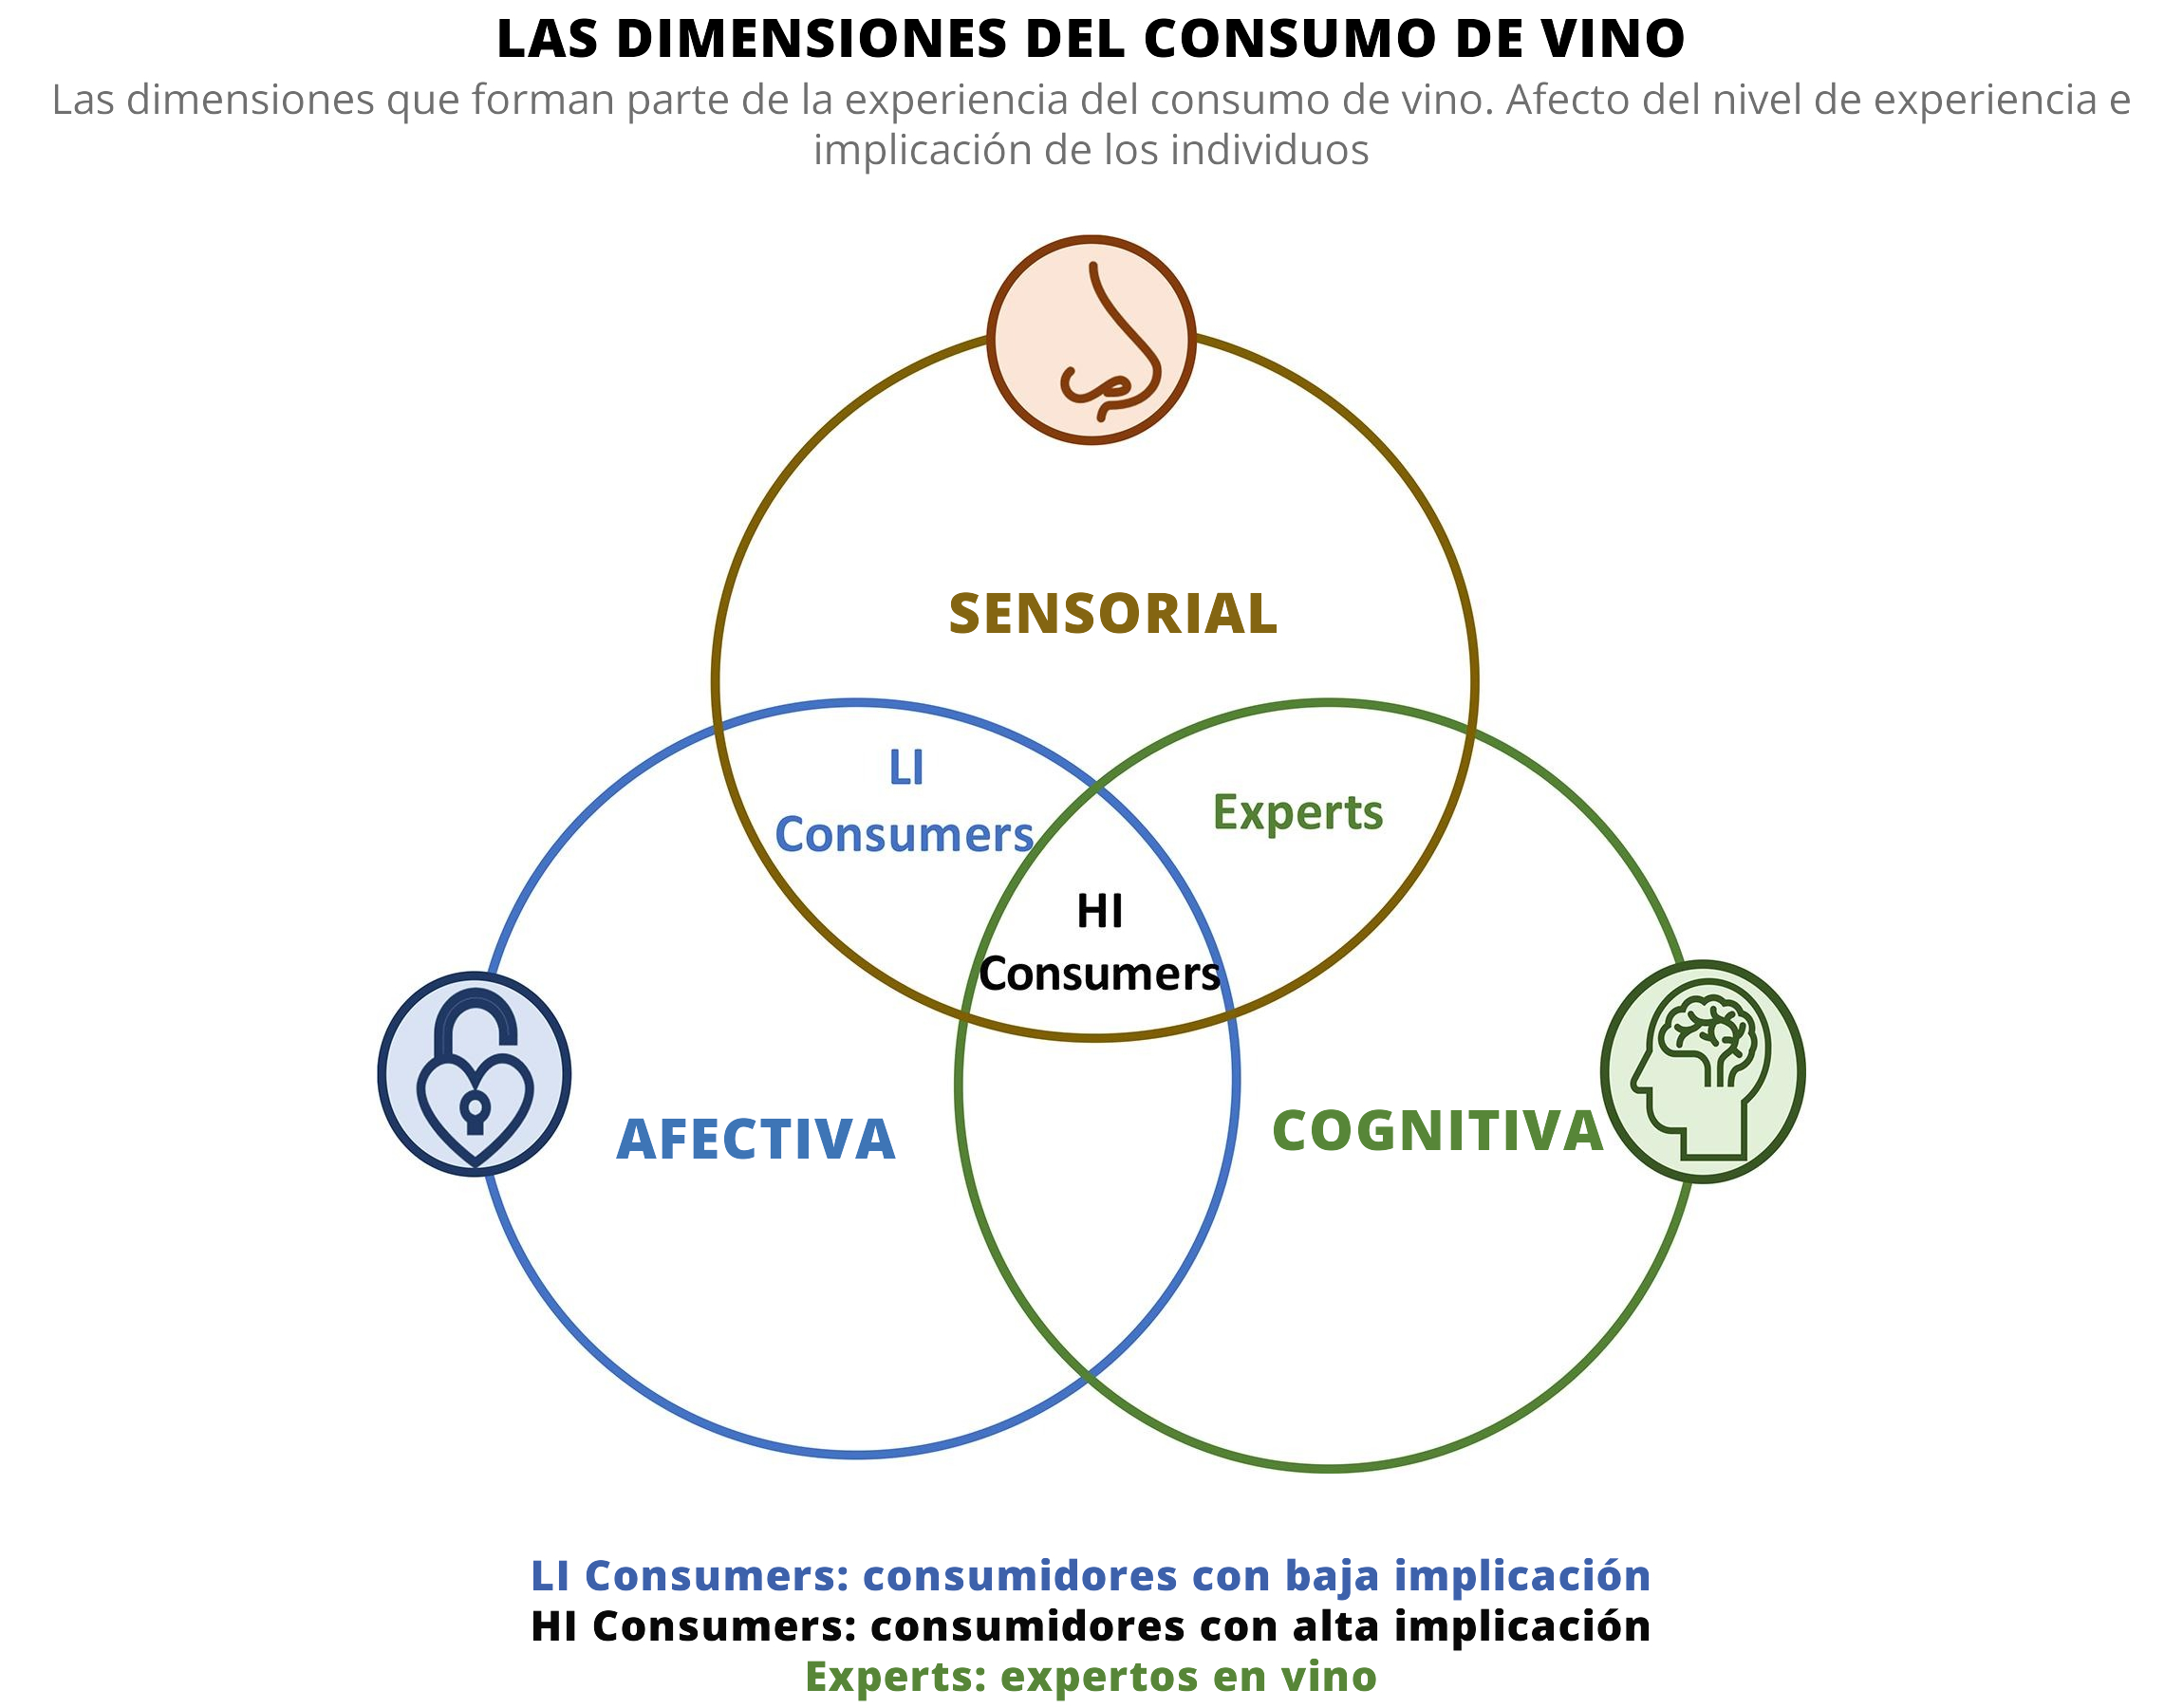 Las dimensiones del consumo de vino